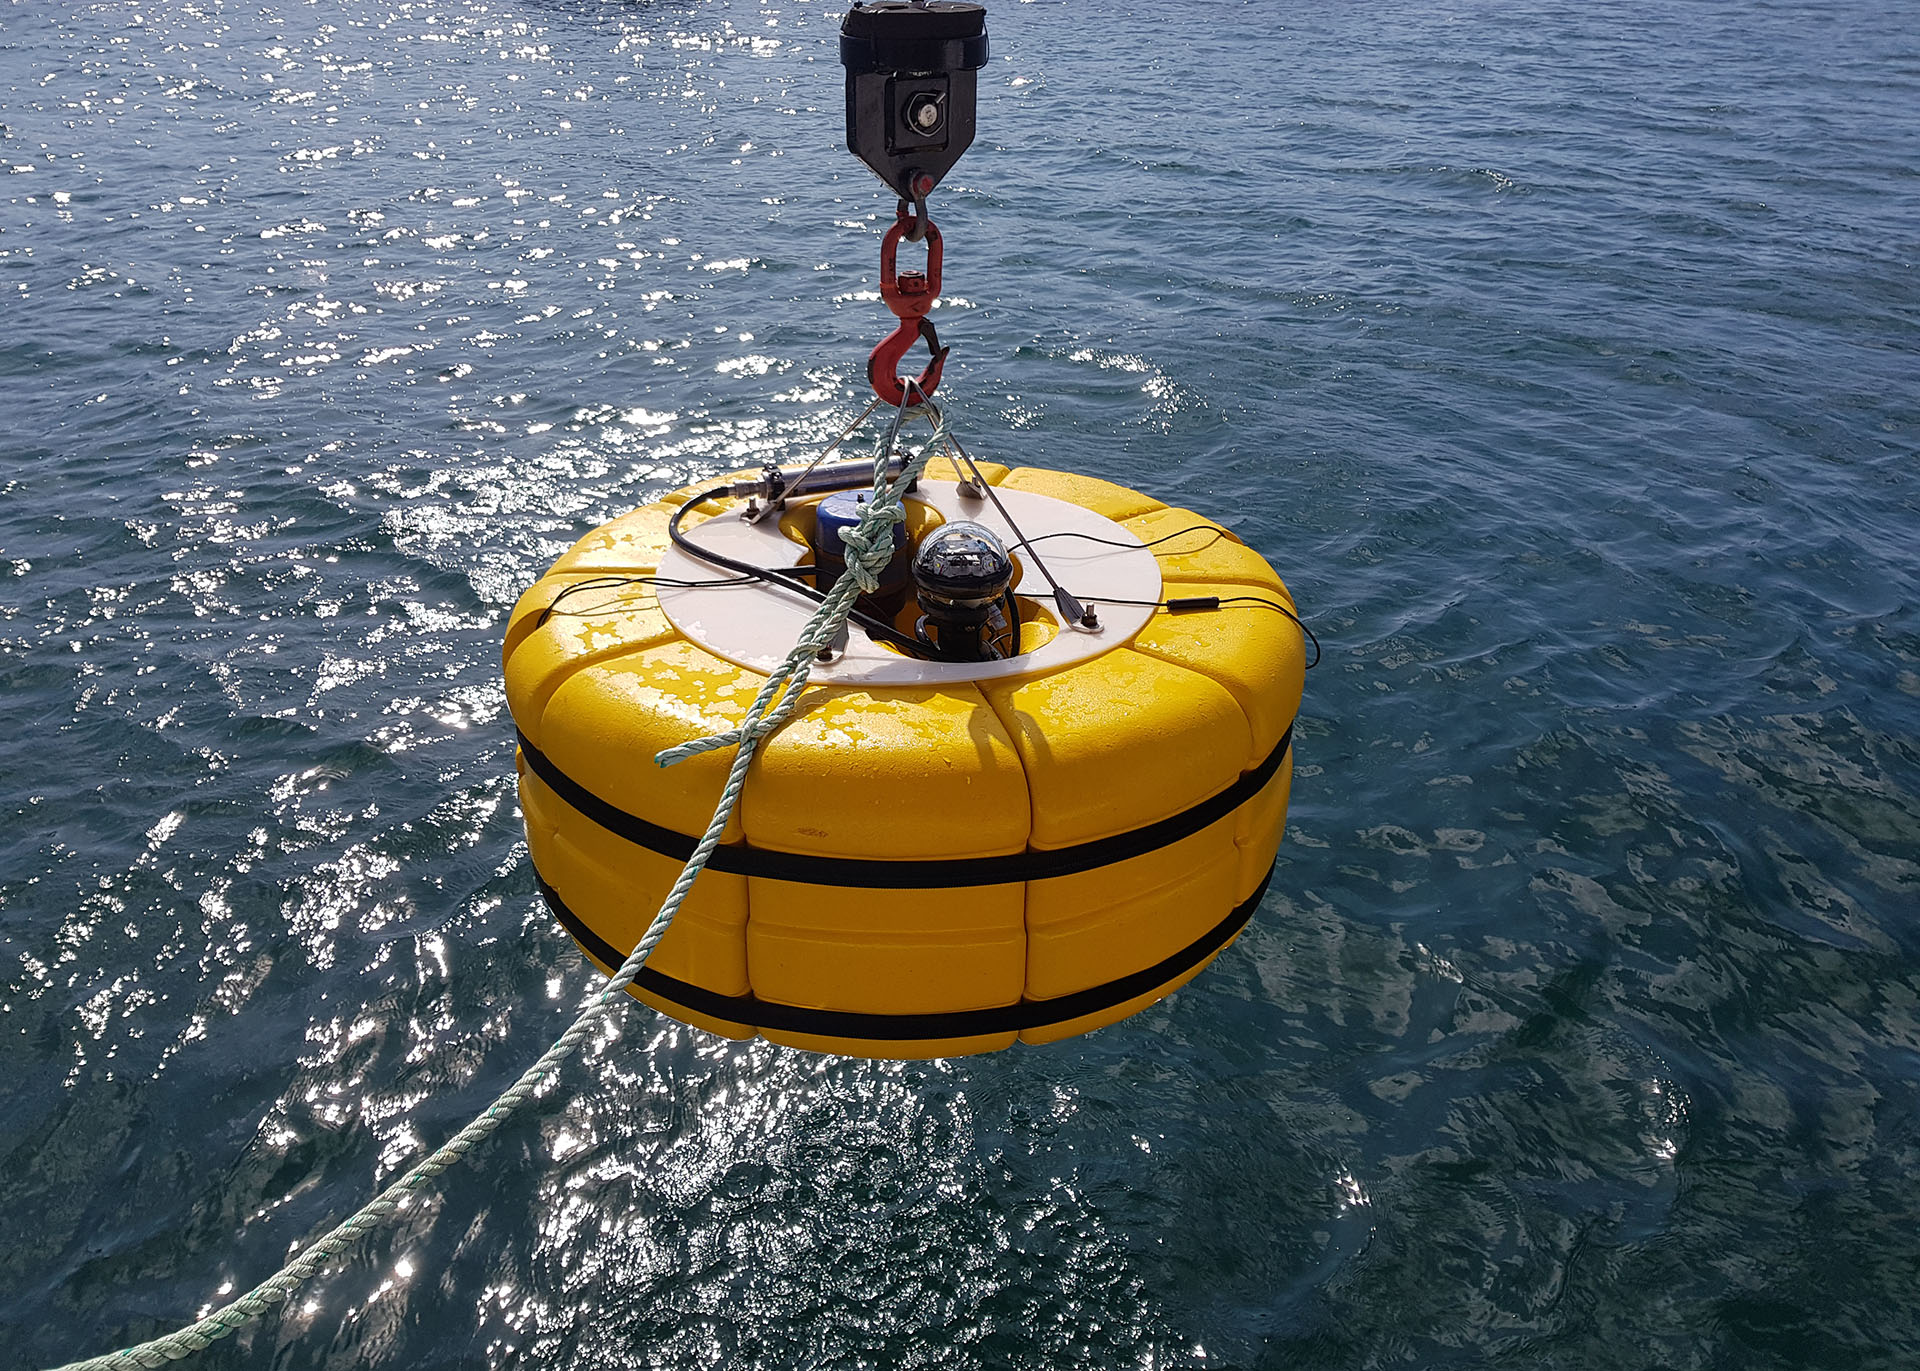 Aquarius ocean bottom seismometer during test deployment